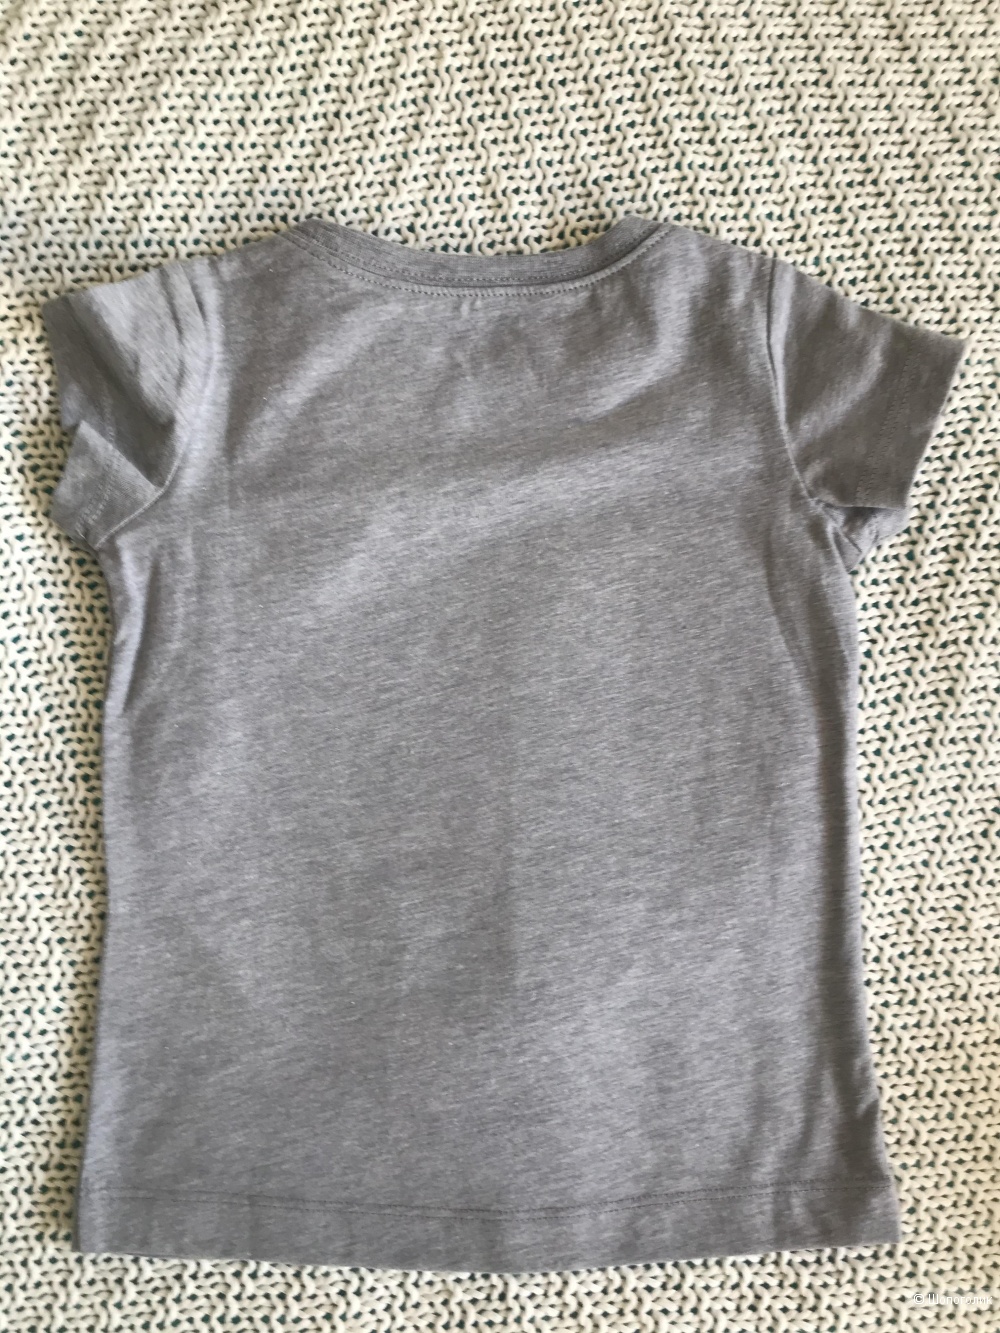 Детская футболка, Levi’s, 86-92 раз